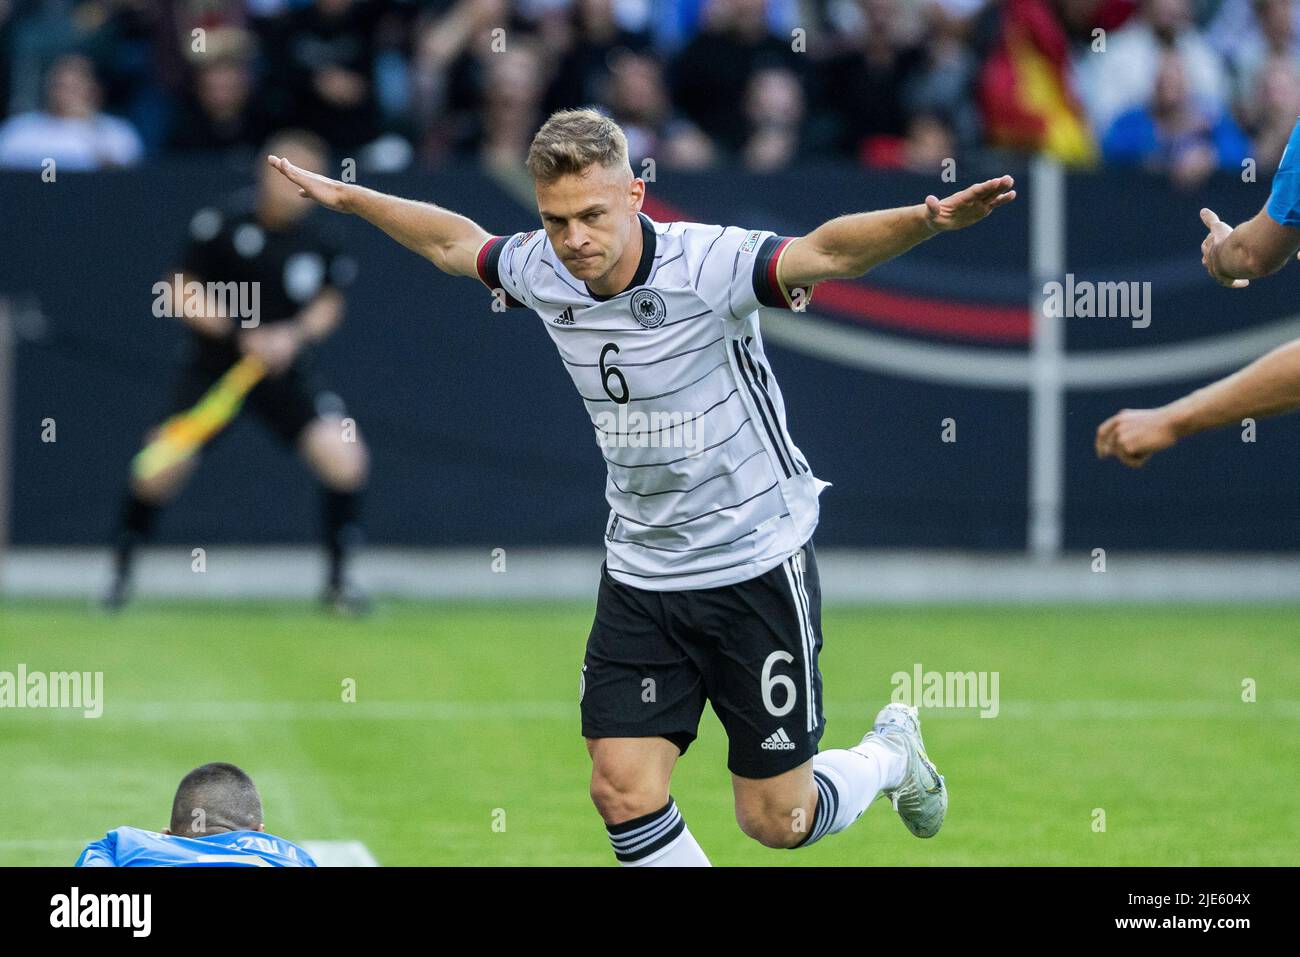 Mönchengladbach, Borussia-Park, 14.06.22: Joshua Kimmich (Deutschland) schiesst das 1:0 Tor und jubelt beim Länderspiel zwischen Deutschland vs Itali Foto Stock